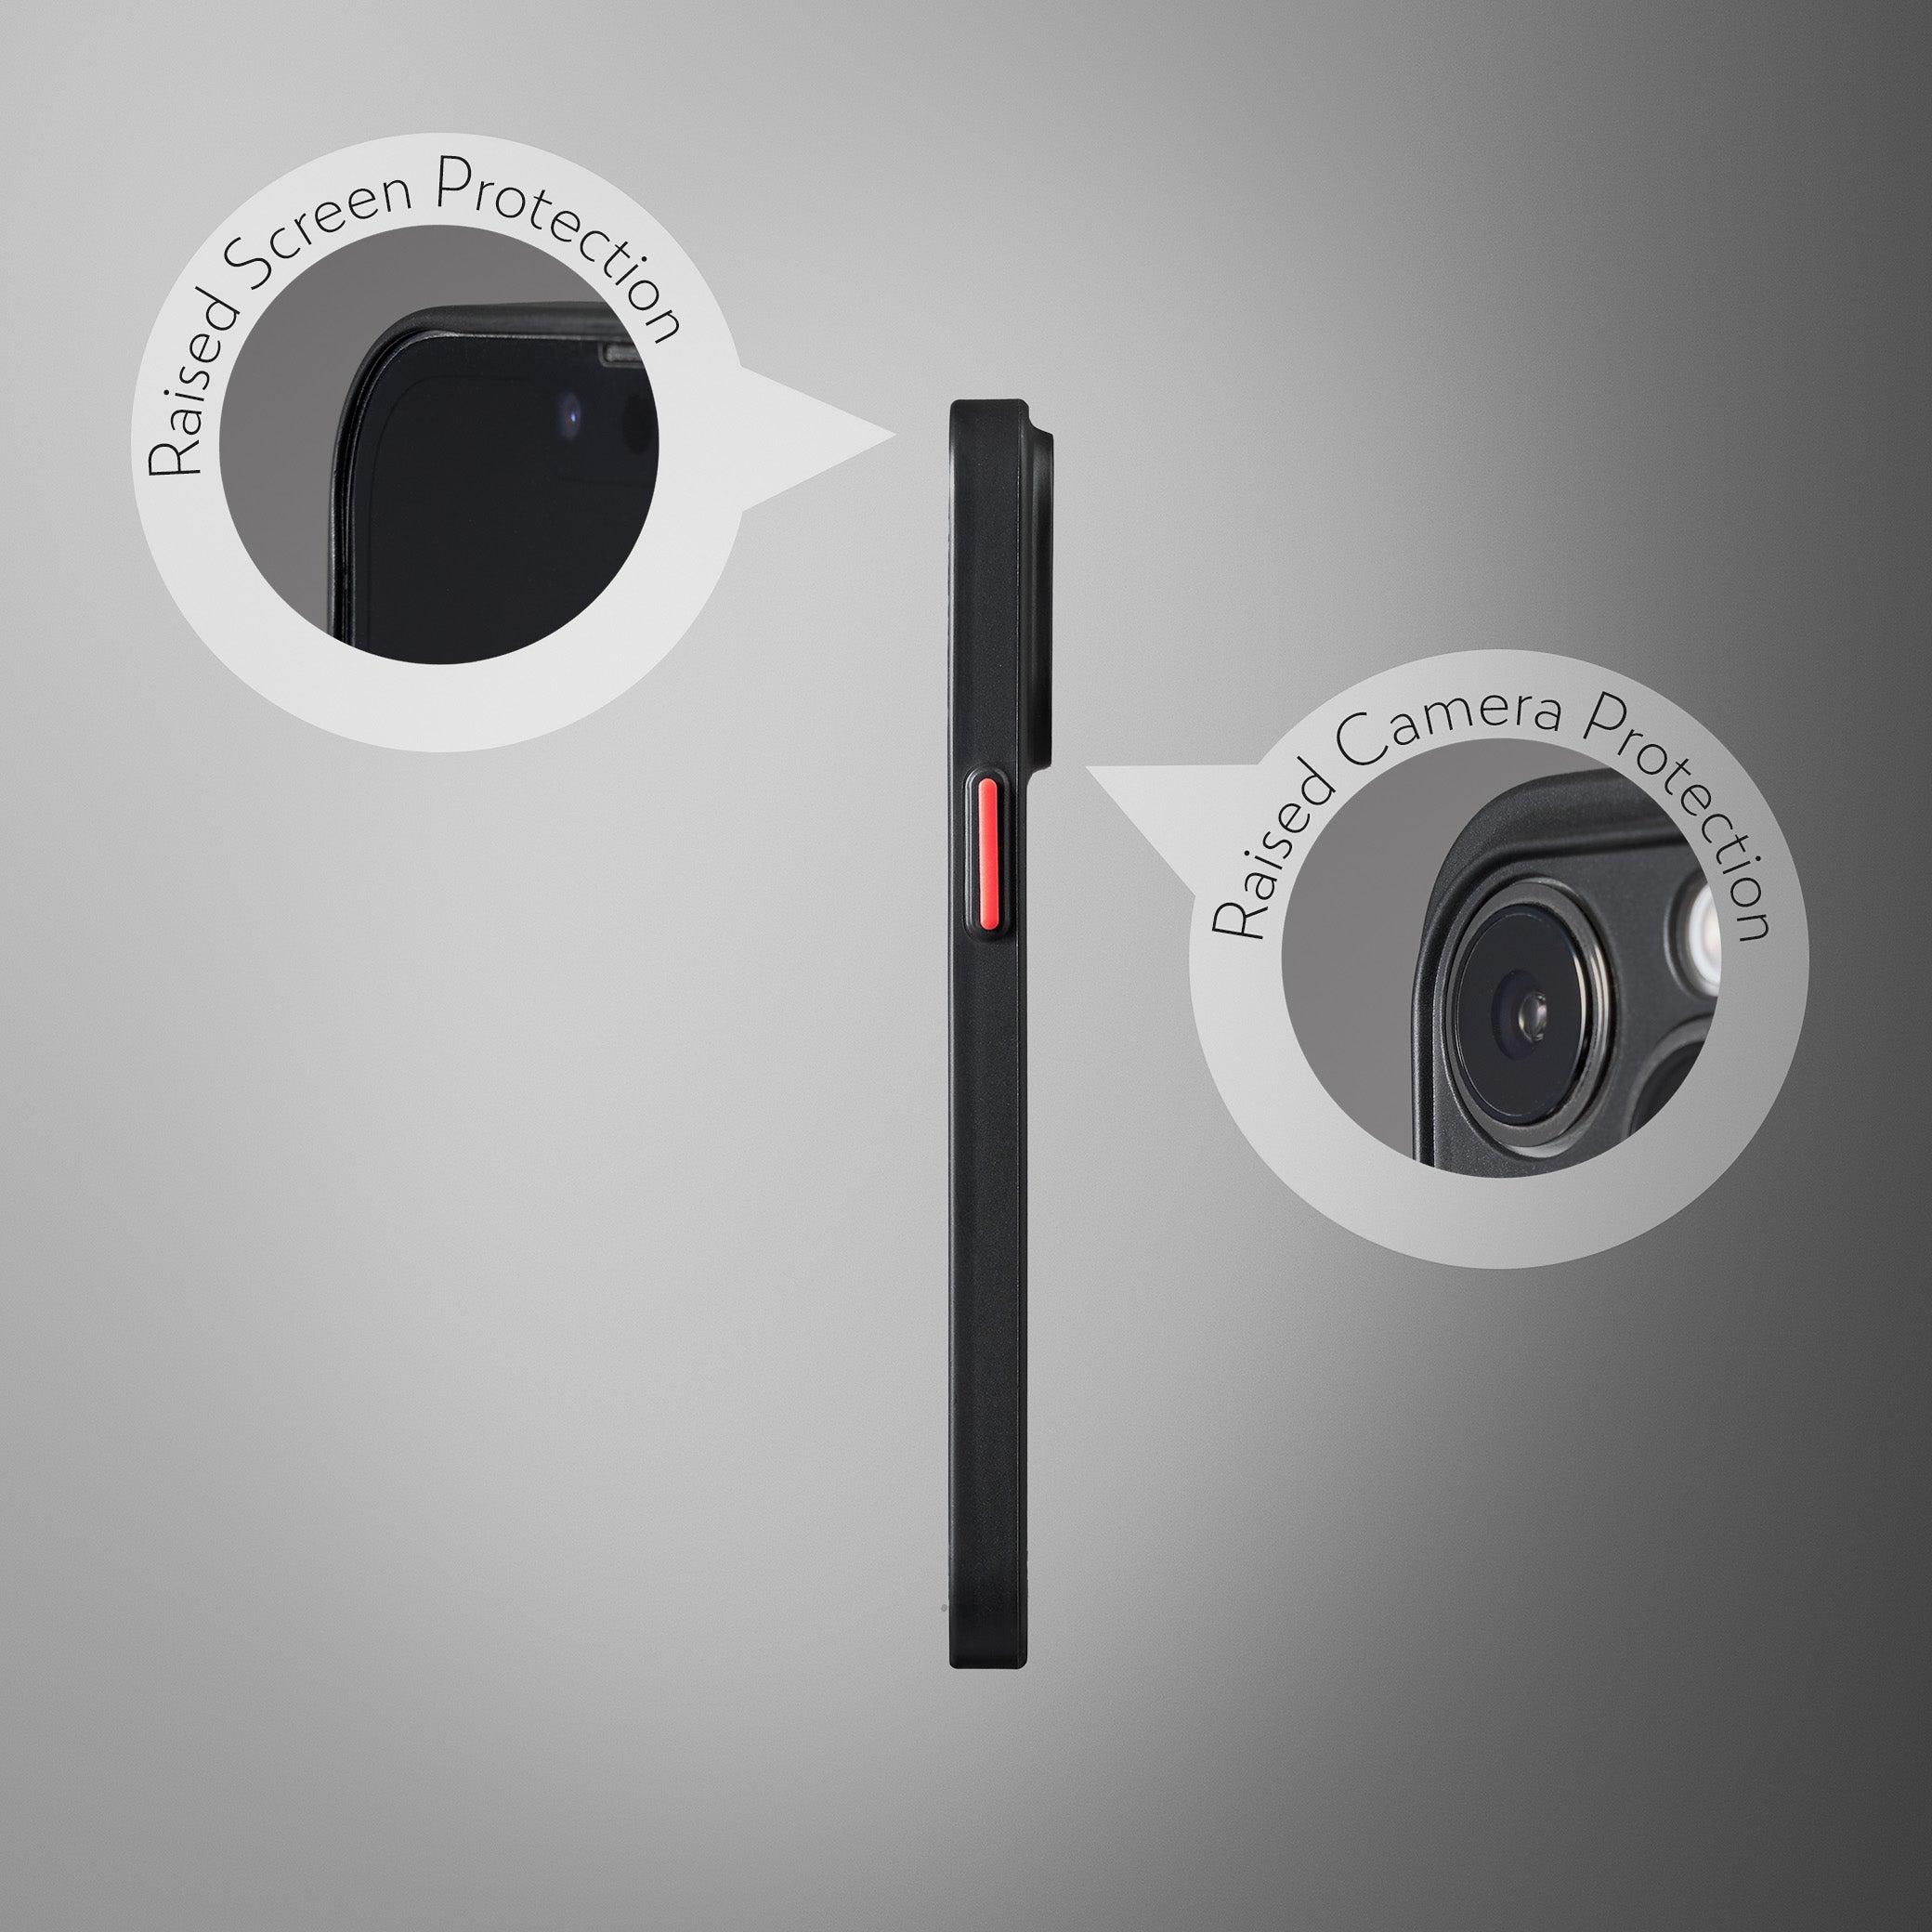 Super Slim Case 2.0 for iPhone 13 Pro - Opaque Black